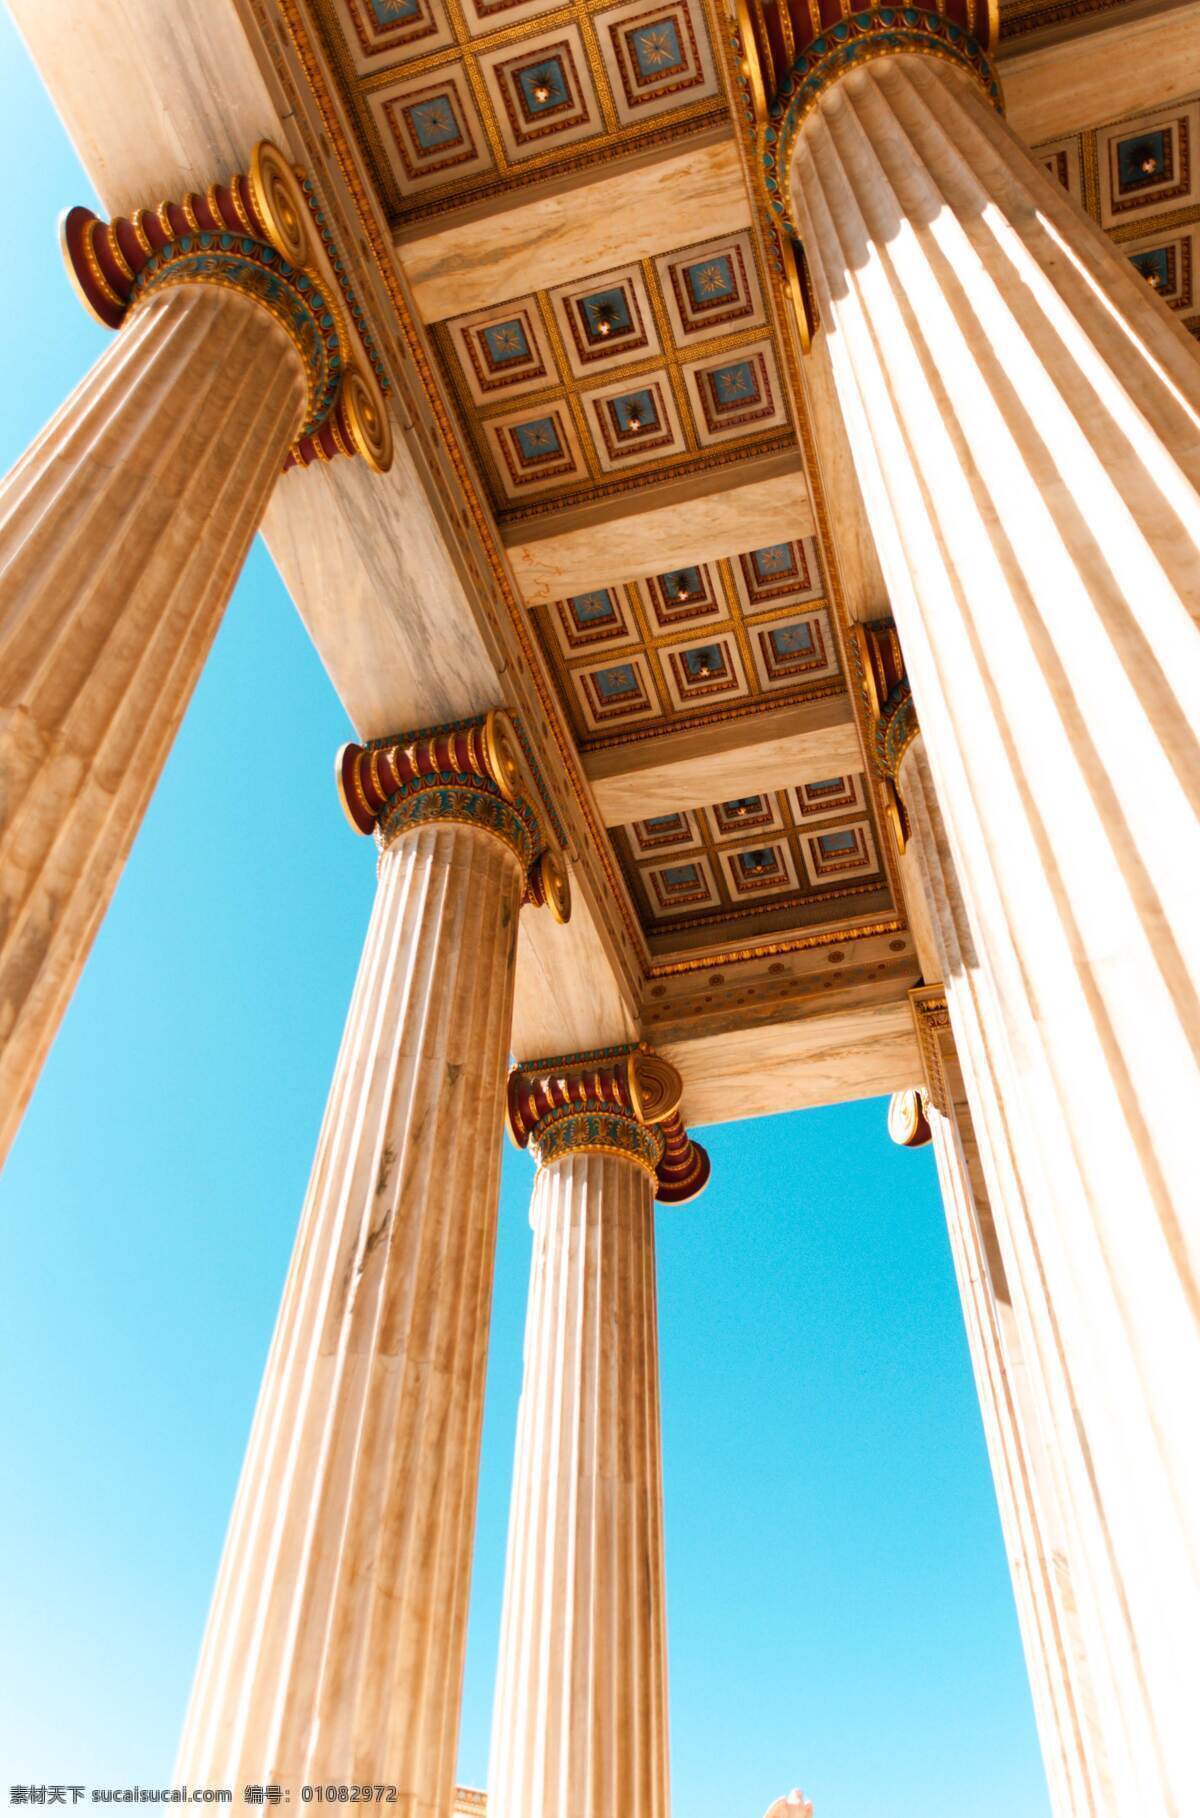 罗马柱子 罗马 柱子 大理石 建筑 古老 旅游摄影 国外旅游